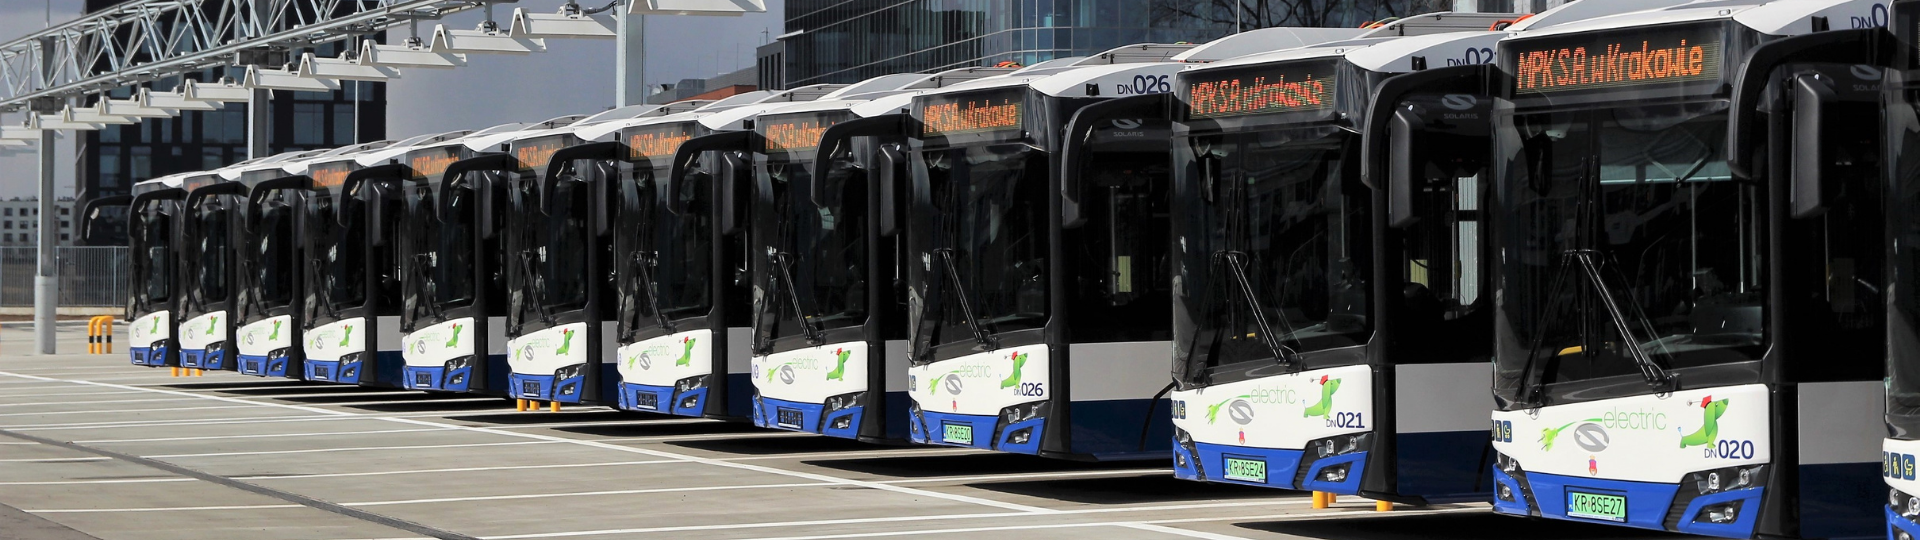 Krakau übernimmt elektrische Solaris-Busse